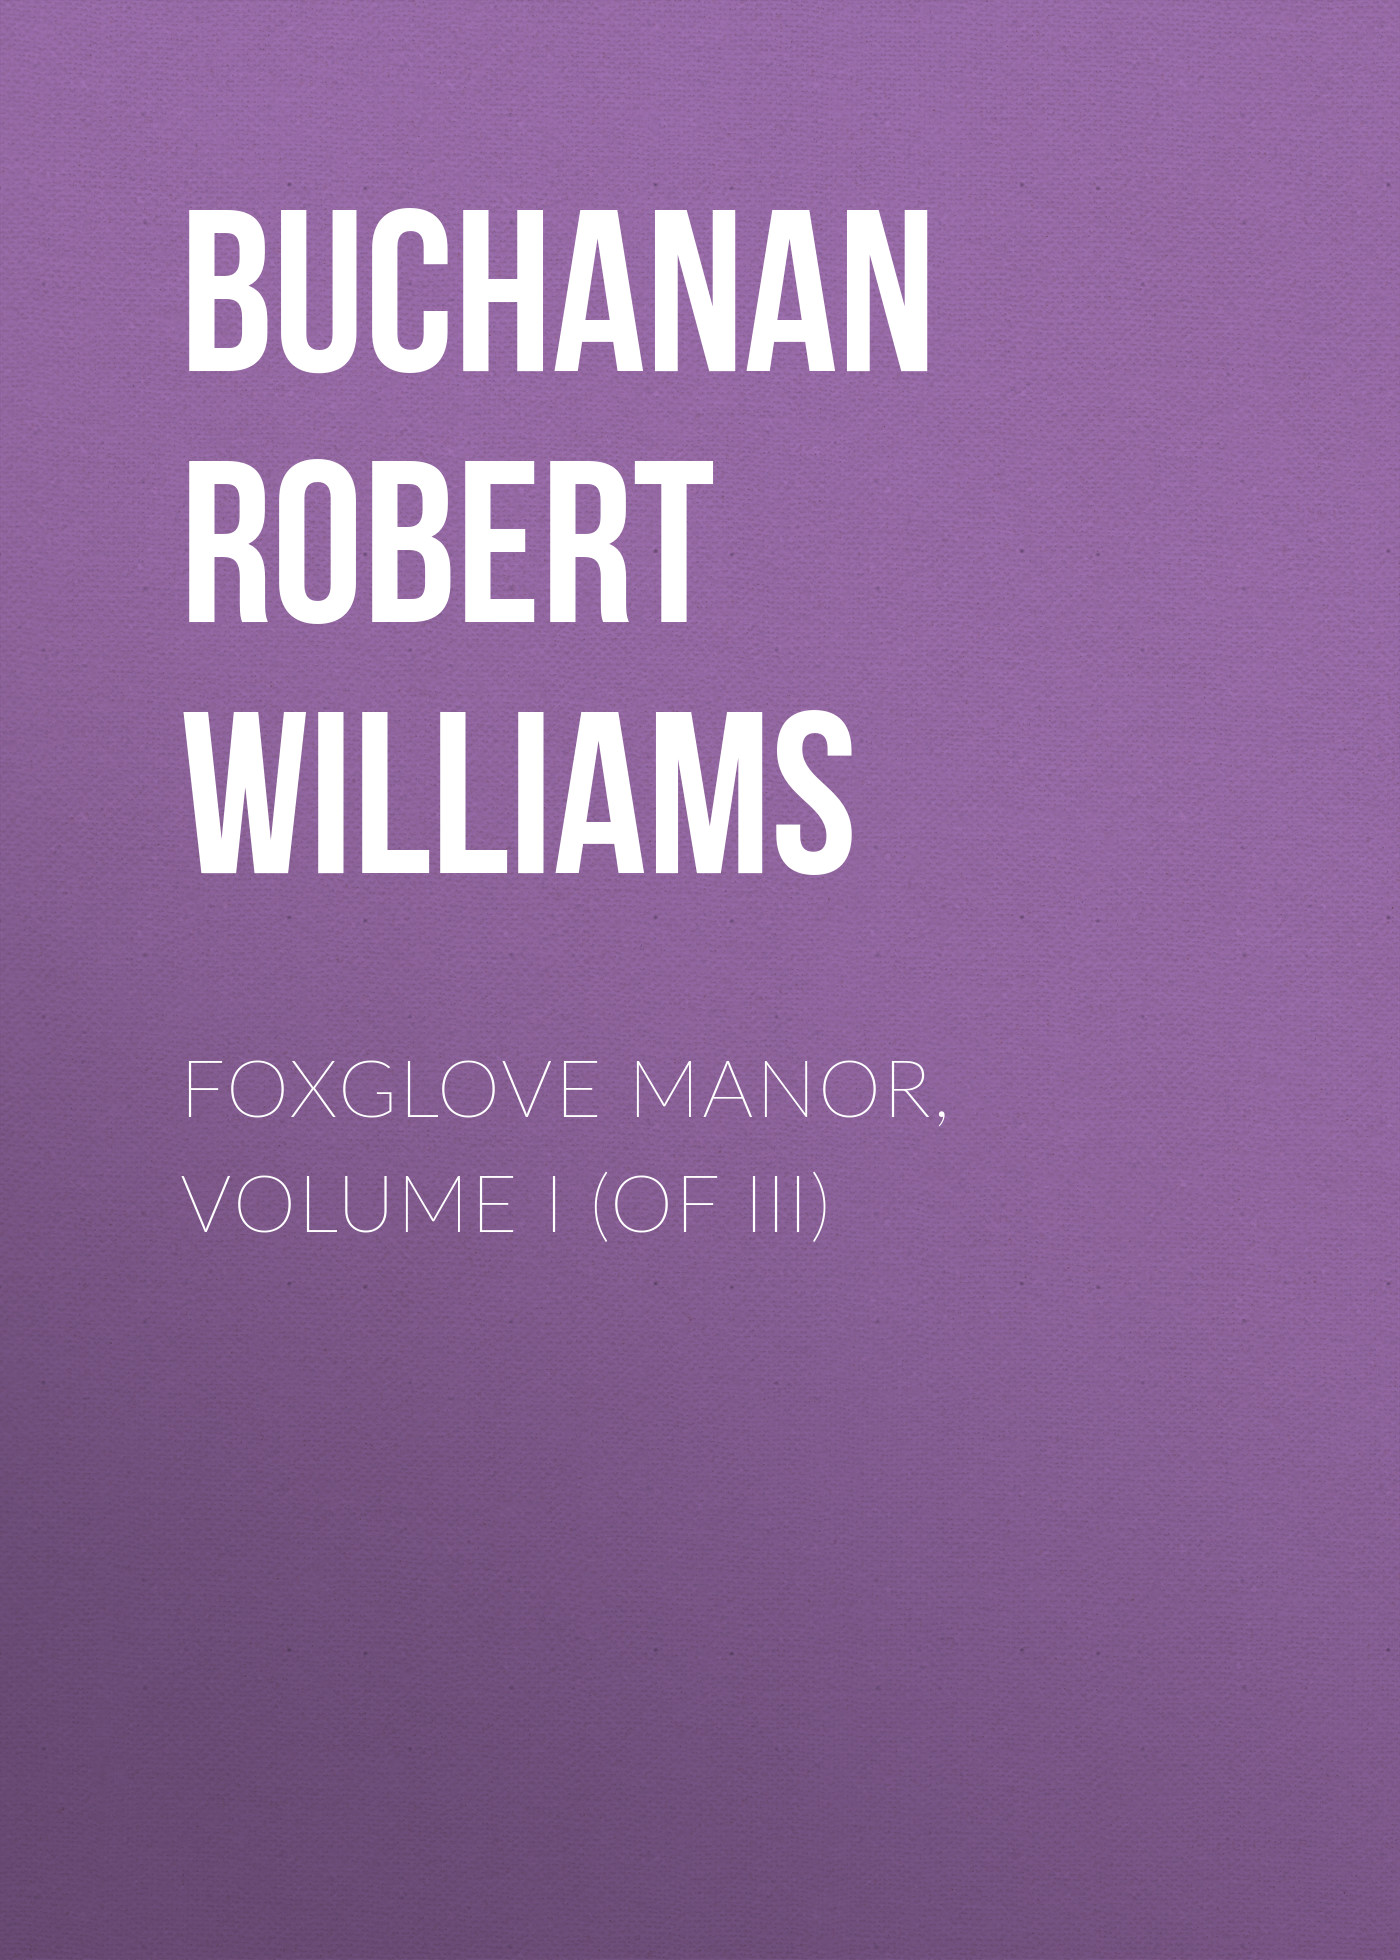 Книга Foxglove Manor, Volume I (of III) из серии , созданная Robert Buchanan, может относится к жанру Зарубежная старинная литература, Зарубежная классика. Стоимость электронной книги Foxglove Manor, Volume I (of III) с идентификатором 24180412 составляет 0 руб.